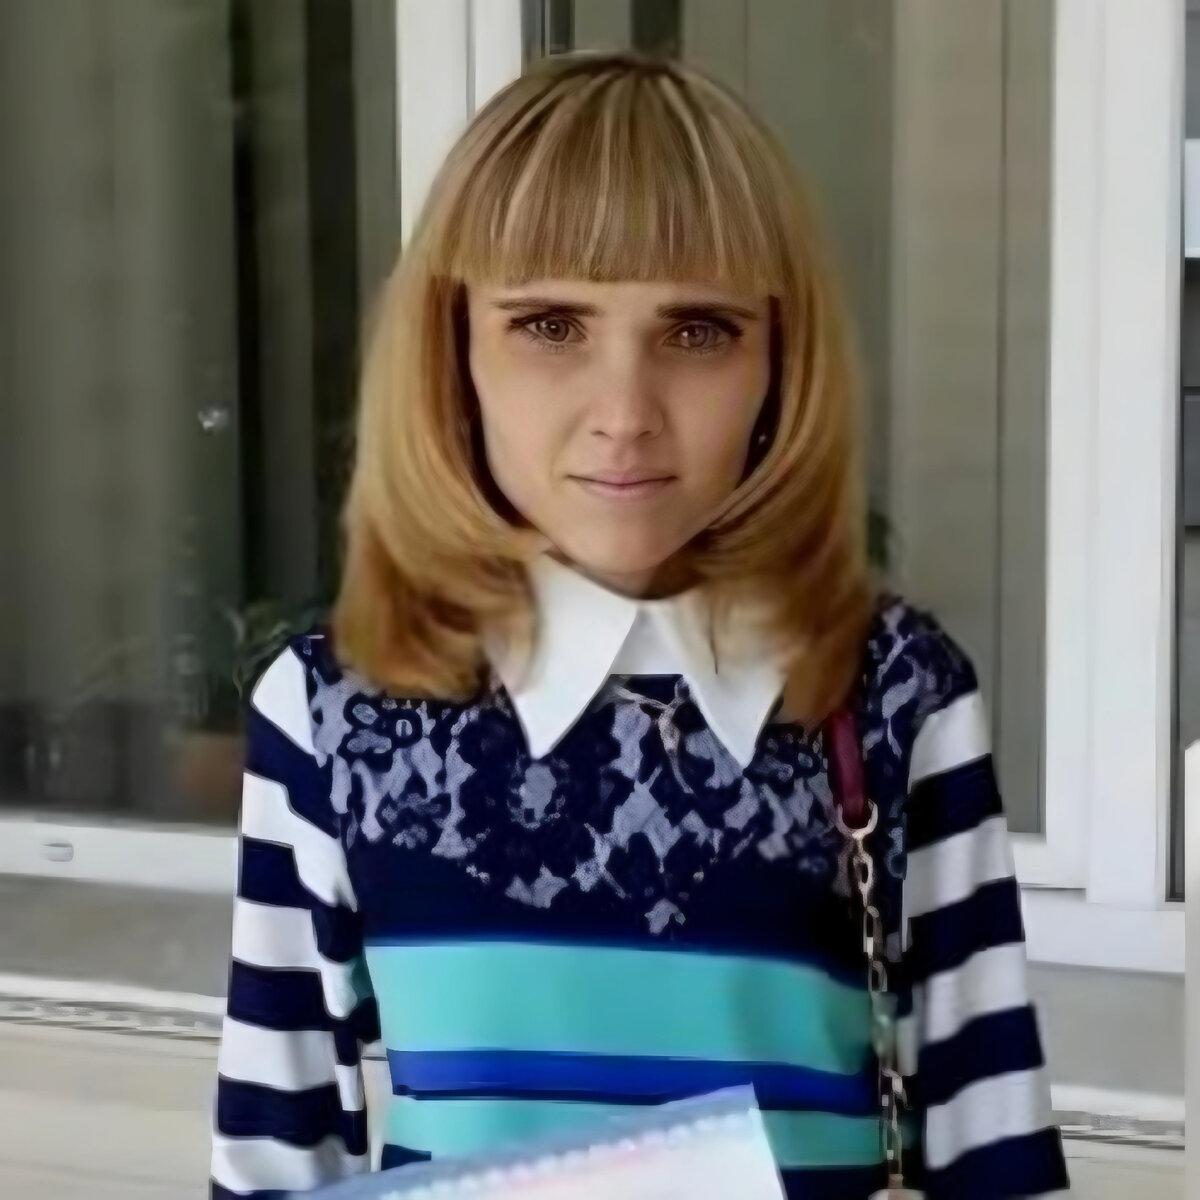 Кристина Колягина из Барнаула стала широко известна в СМИ после участия в программе "Пусть говорят". Самый низкий вес Кристины составлял всего 17 кг.-10